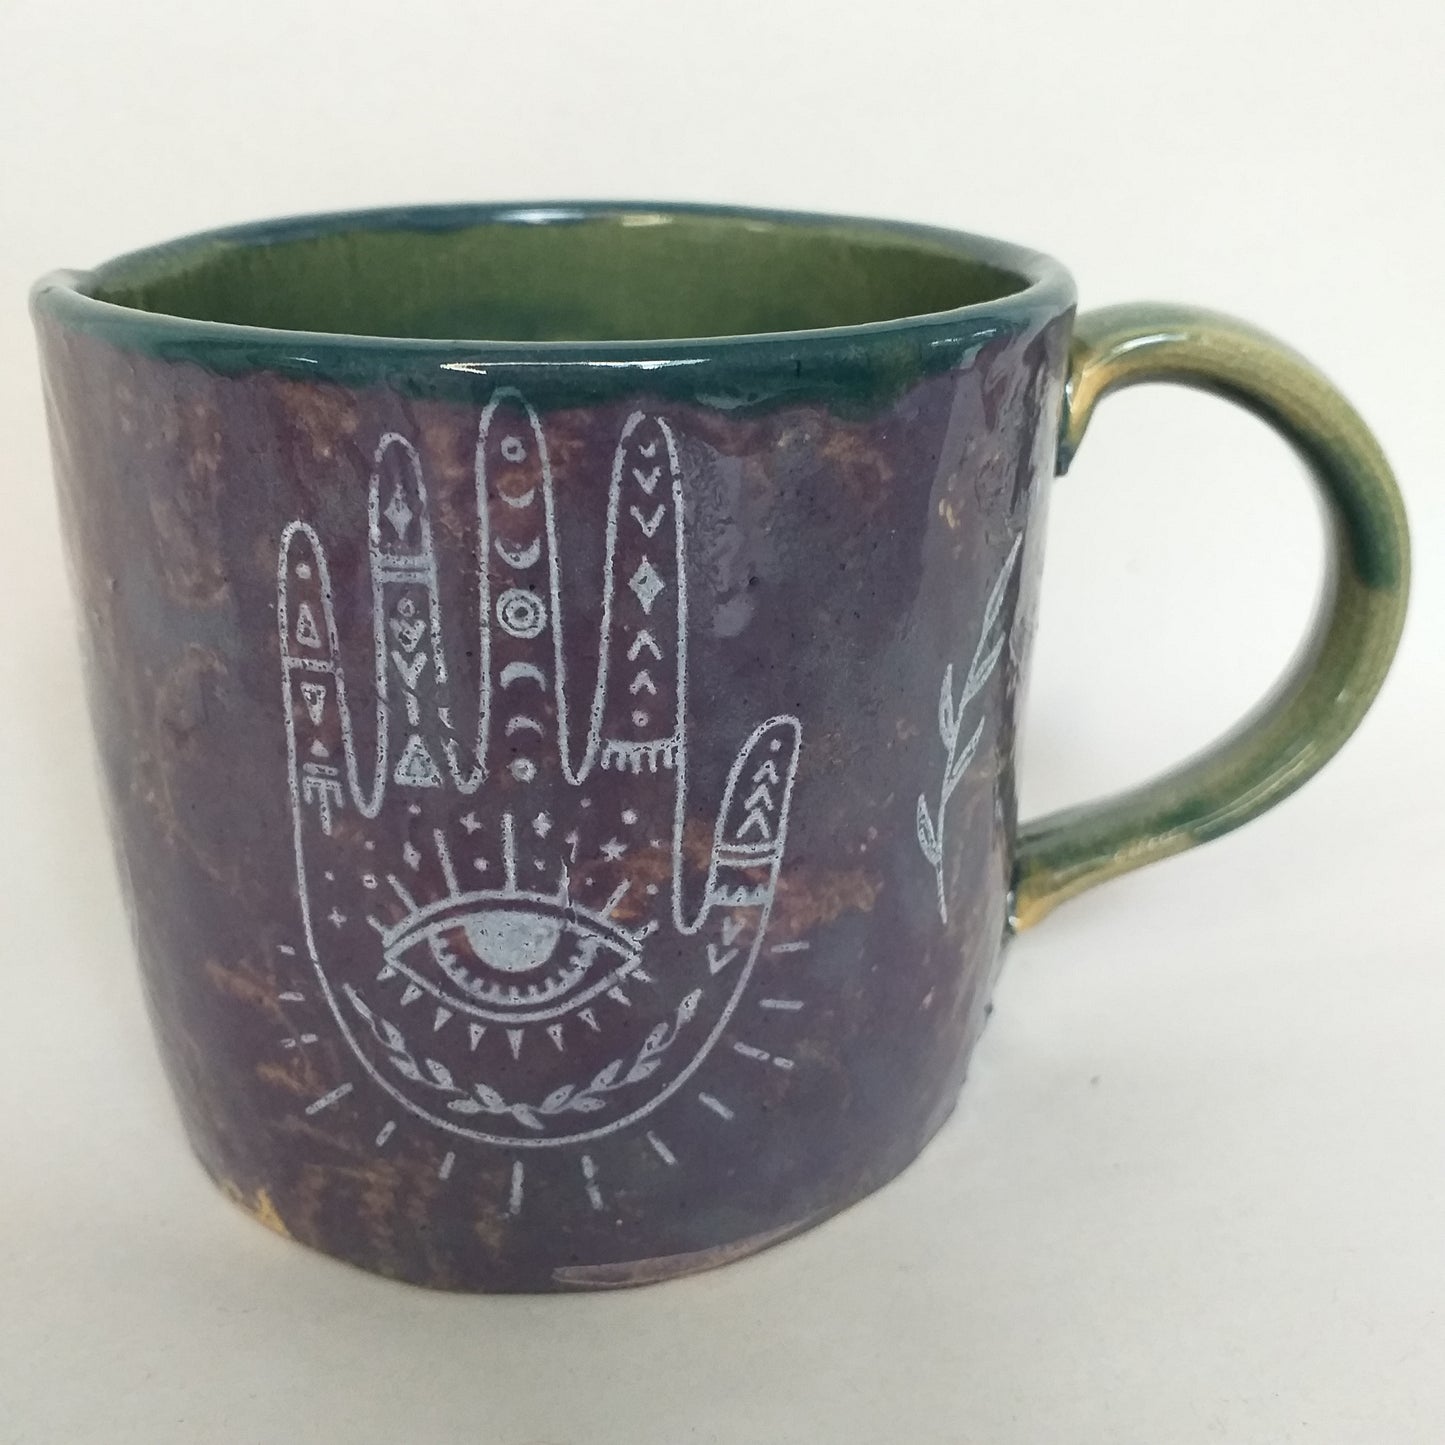 Ceramic Mug, handbuilt